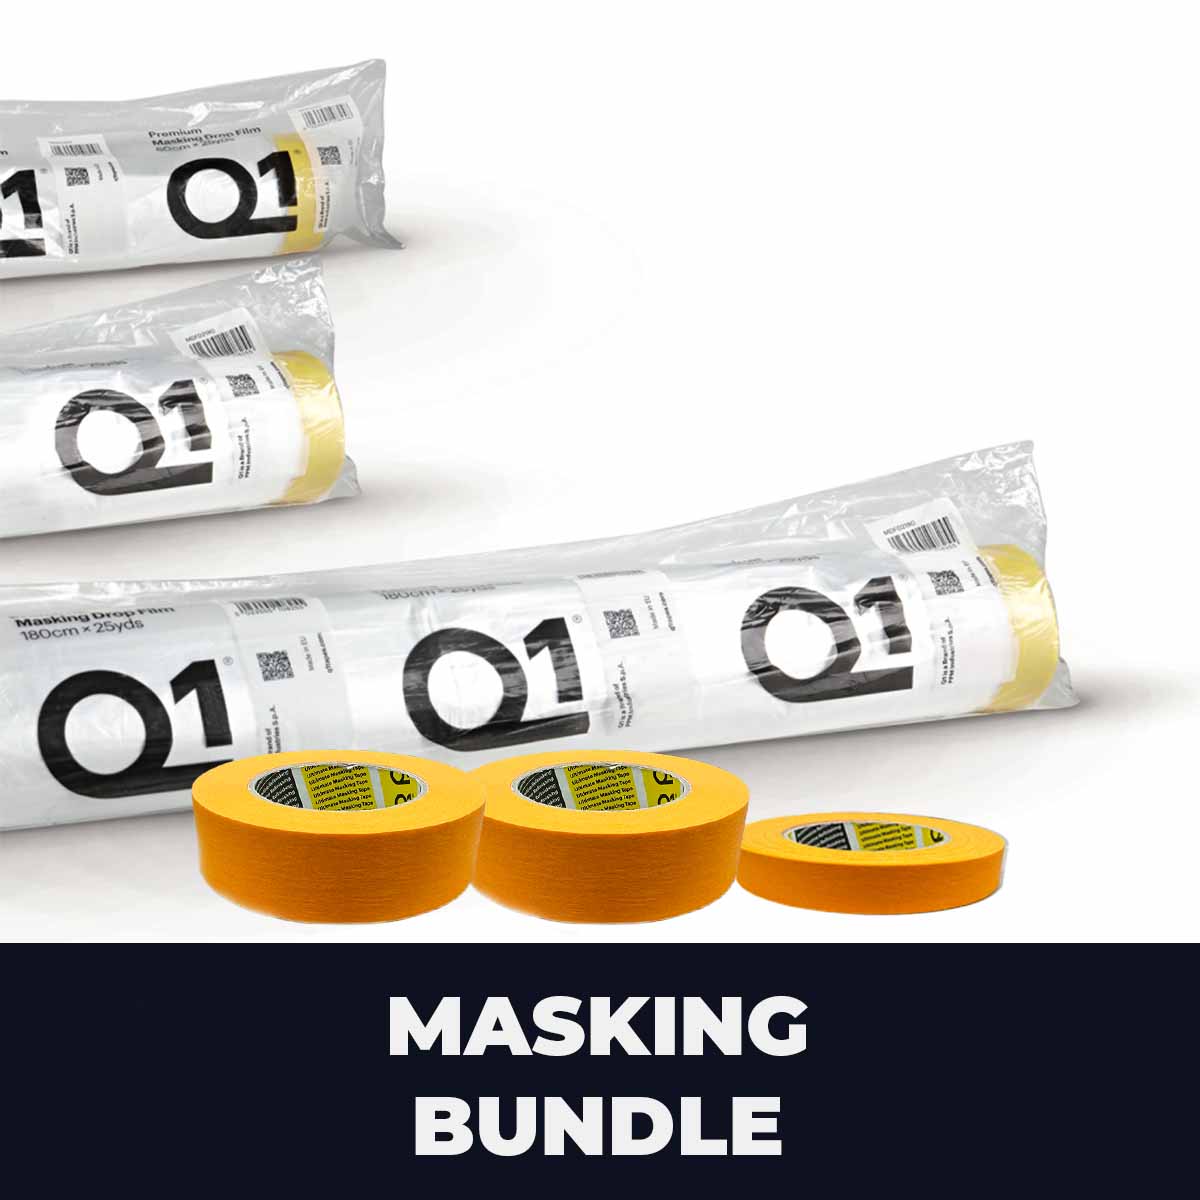 Q1 Masking bundle